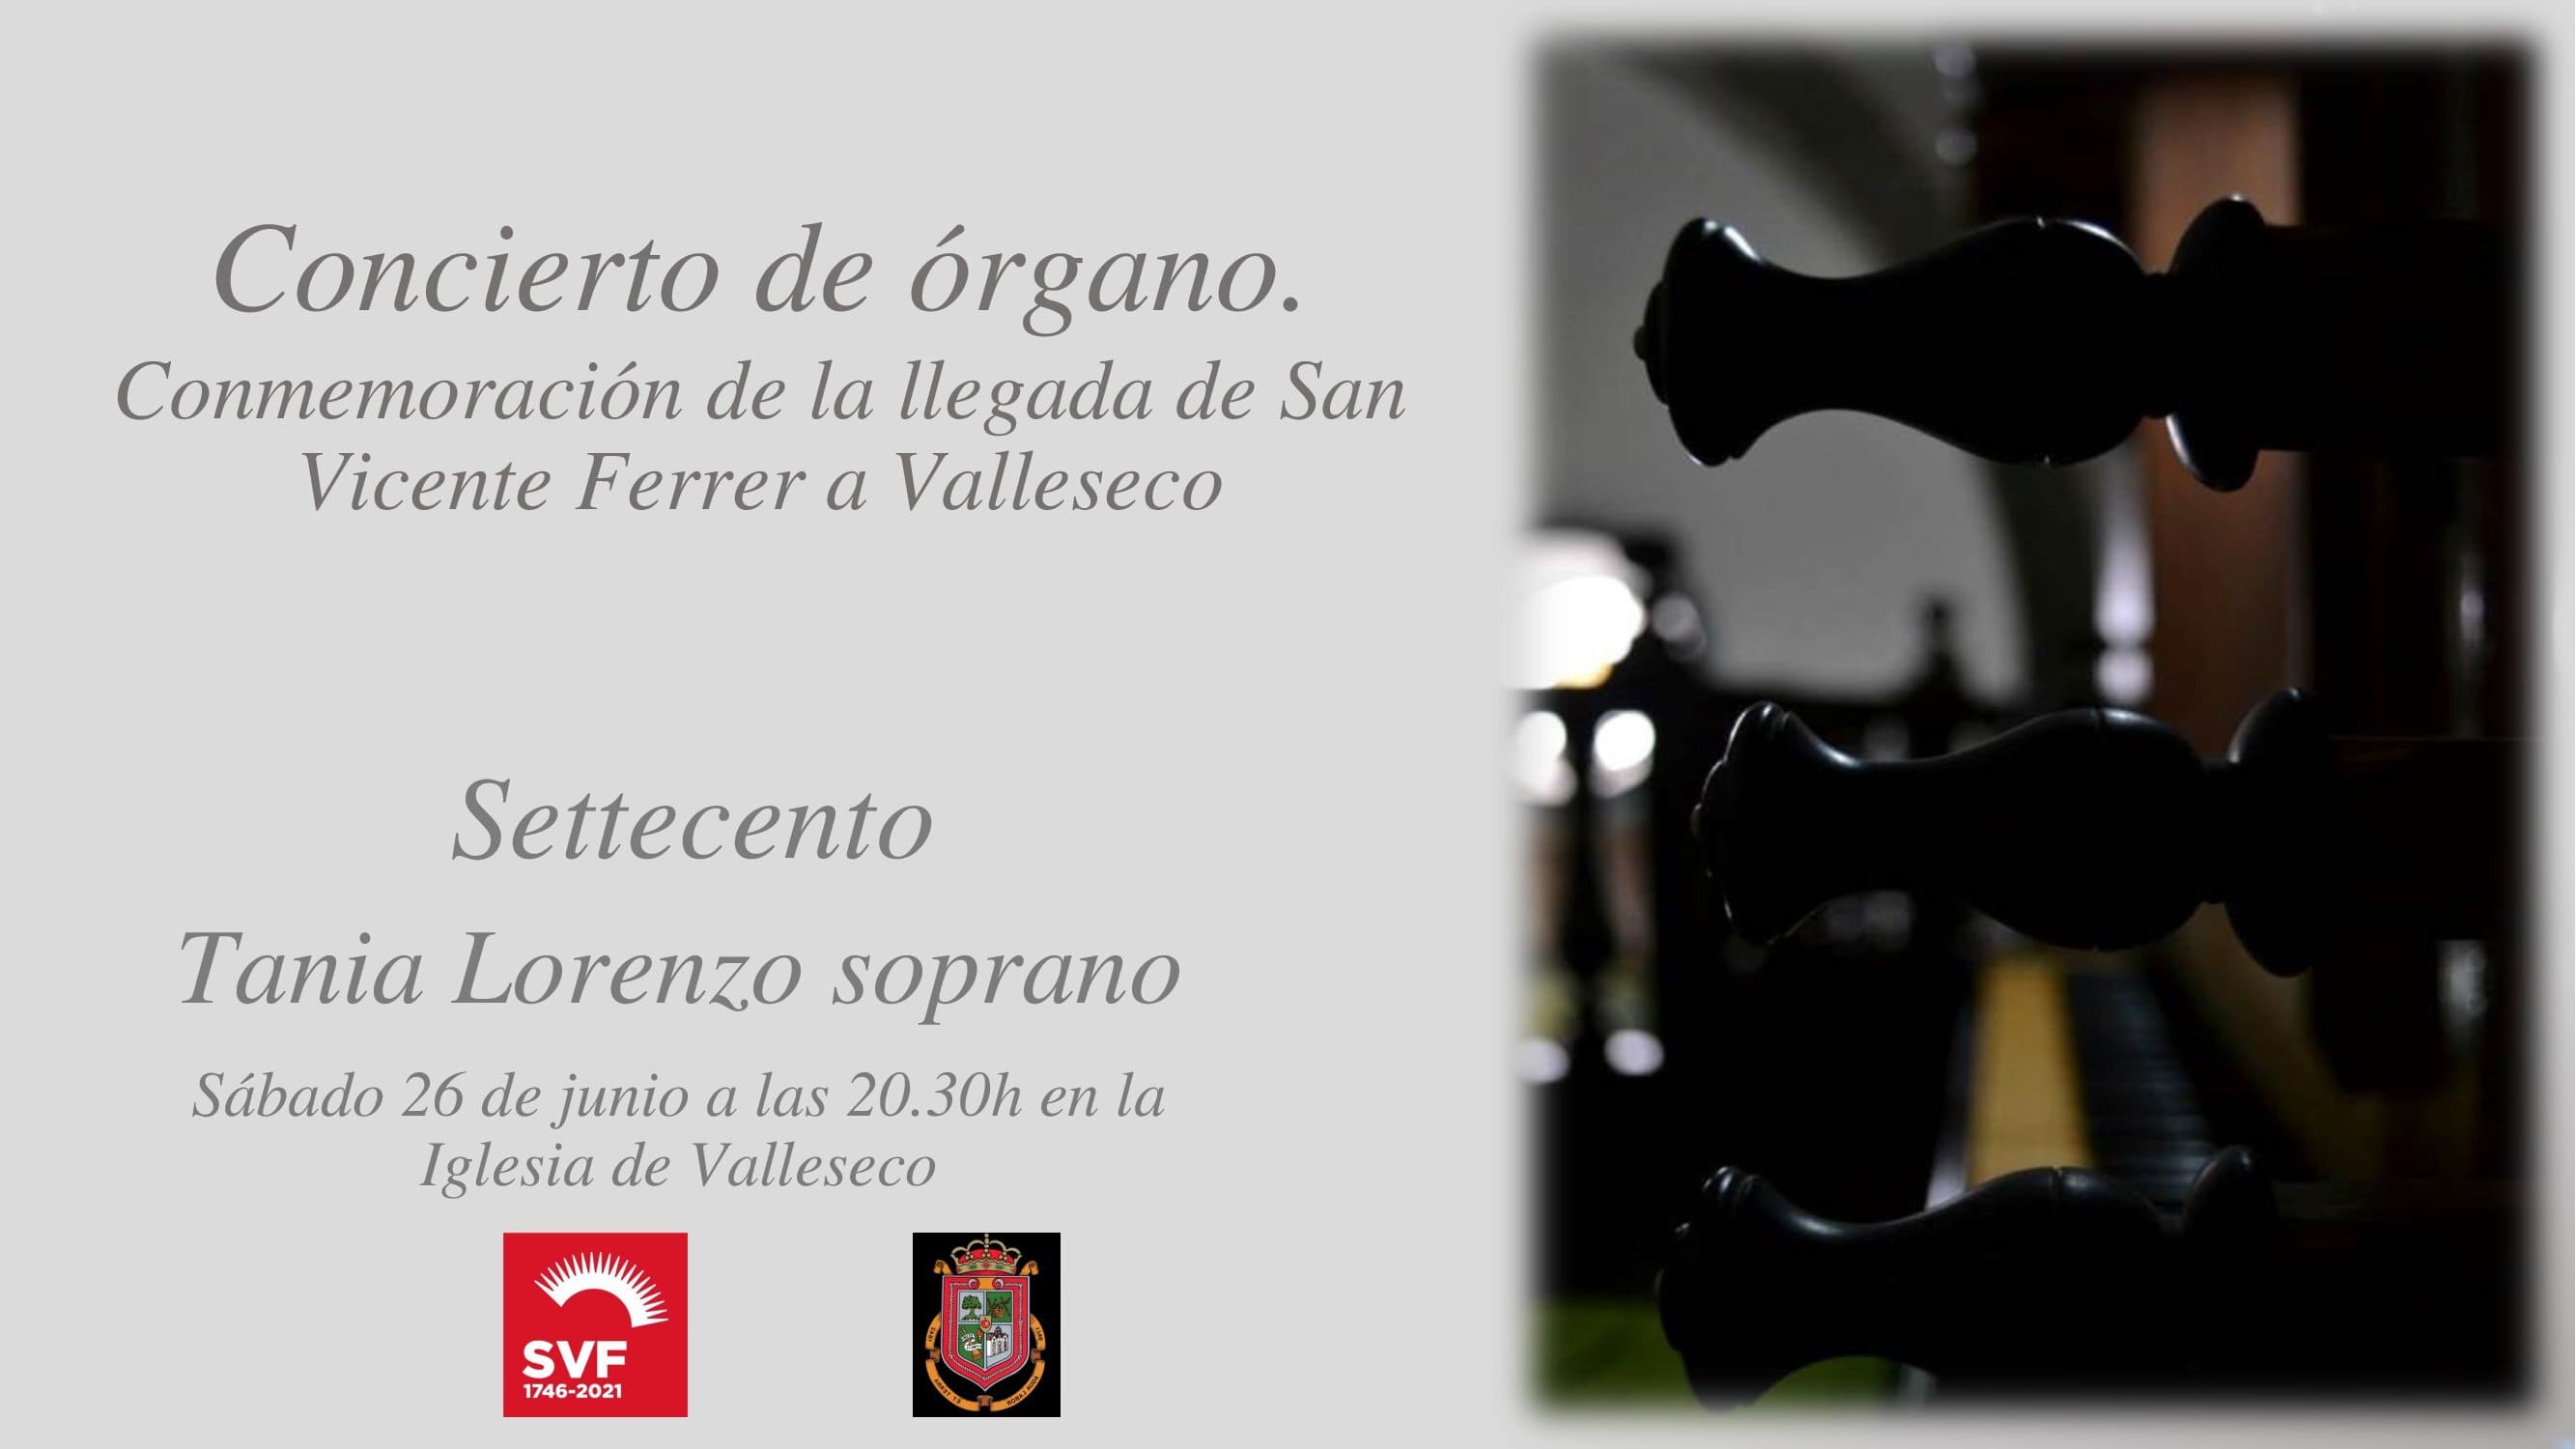 Cartel del concierto de órgano en la iglesia de Valleseco / CanariasNoticias.es